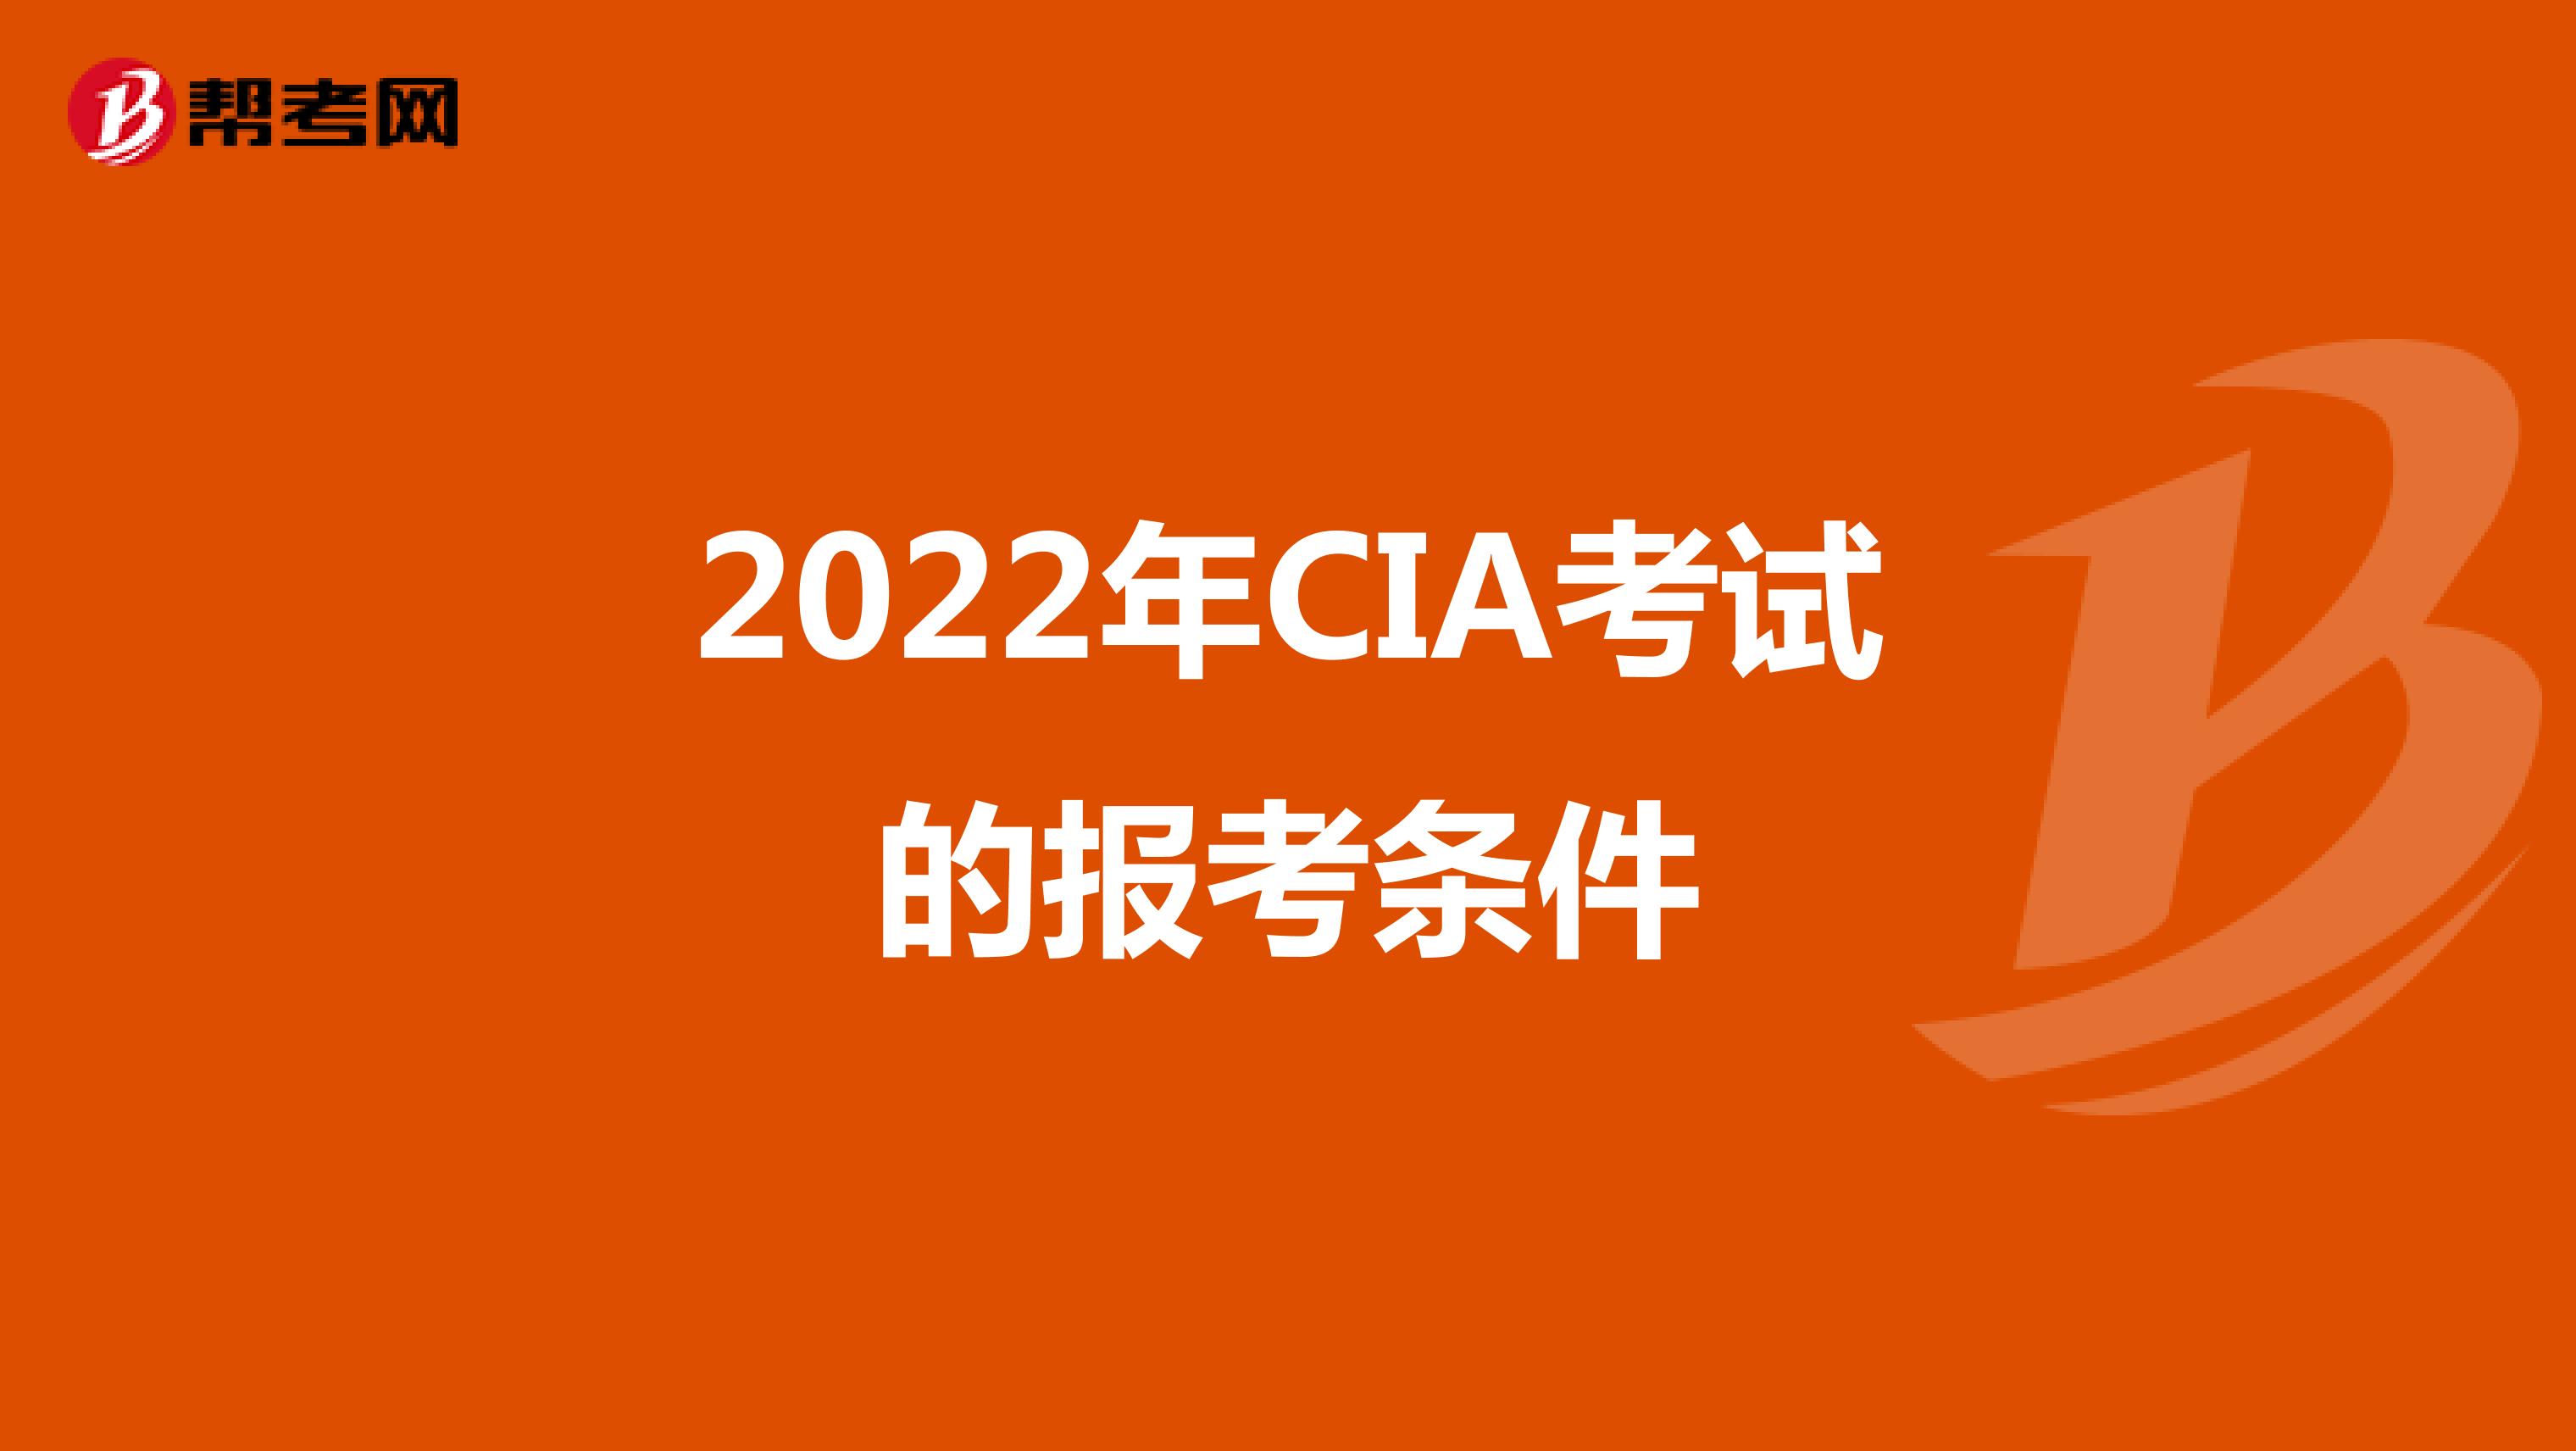 2022年CIA考试的报考条件